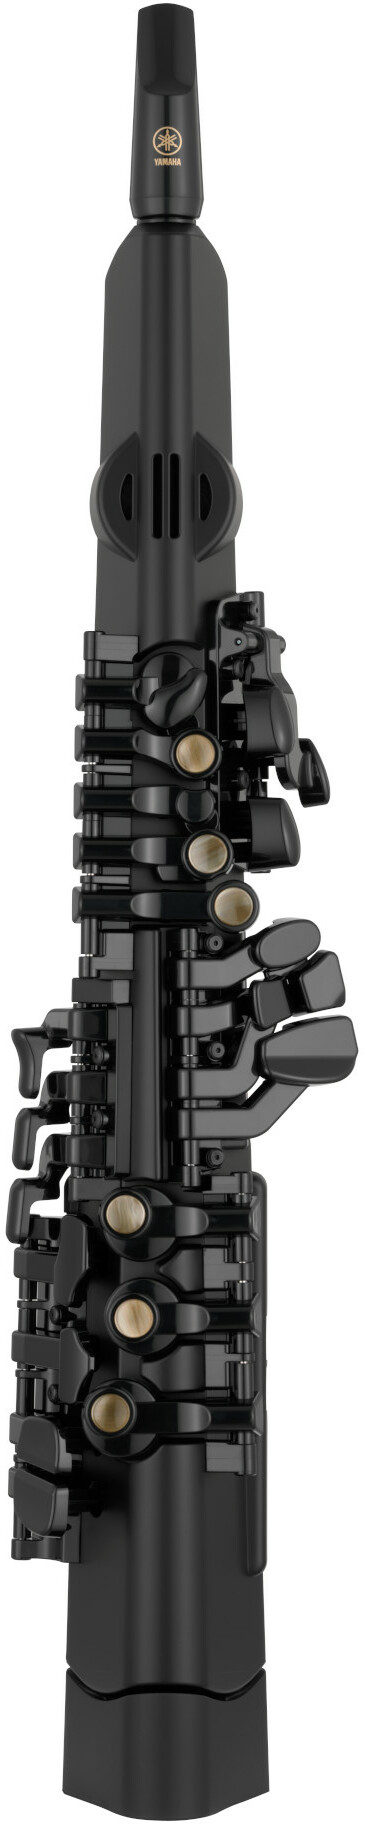 Yamaha Yds-120 Digital Saxophone - Vent Électronique - Main picture